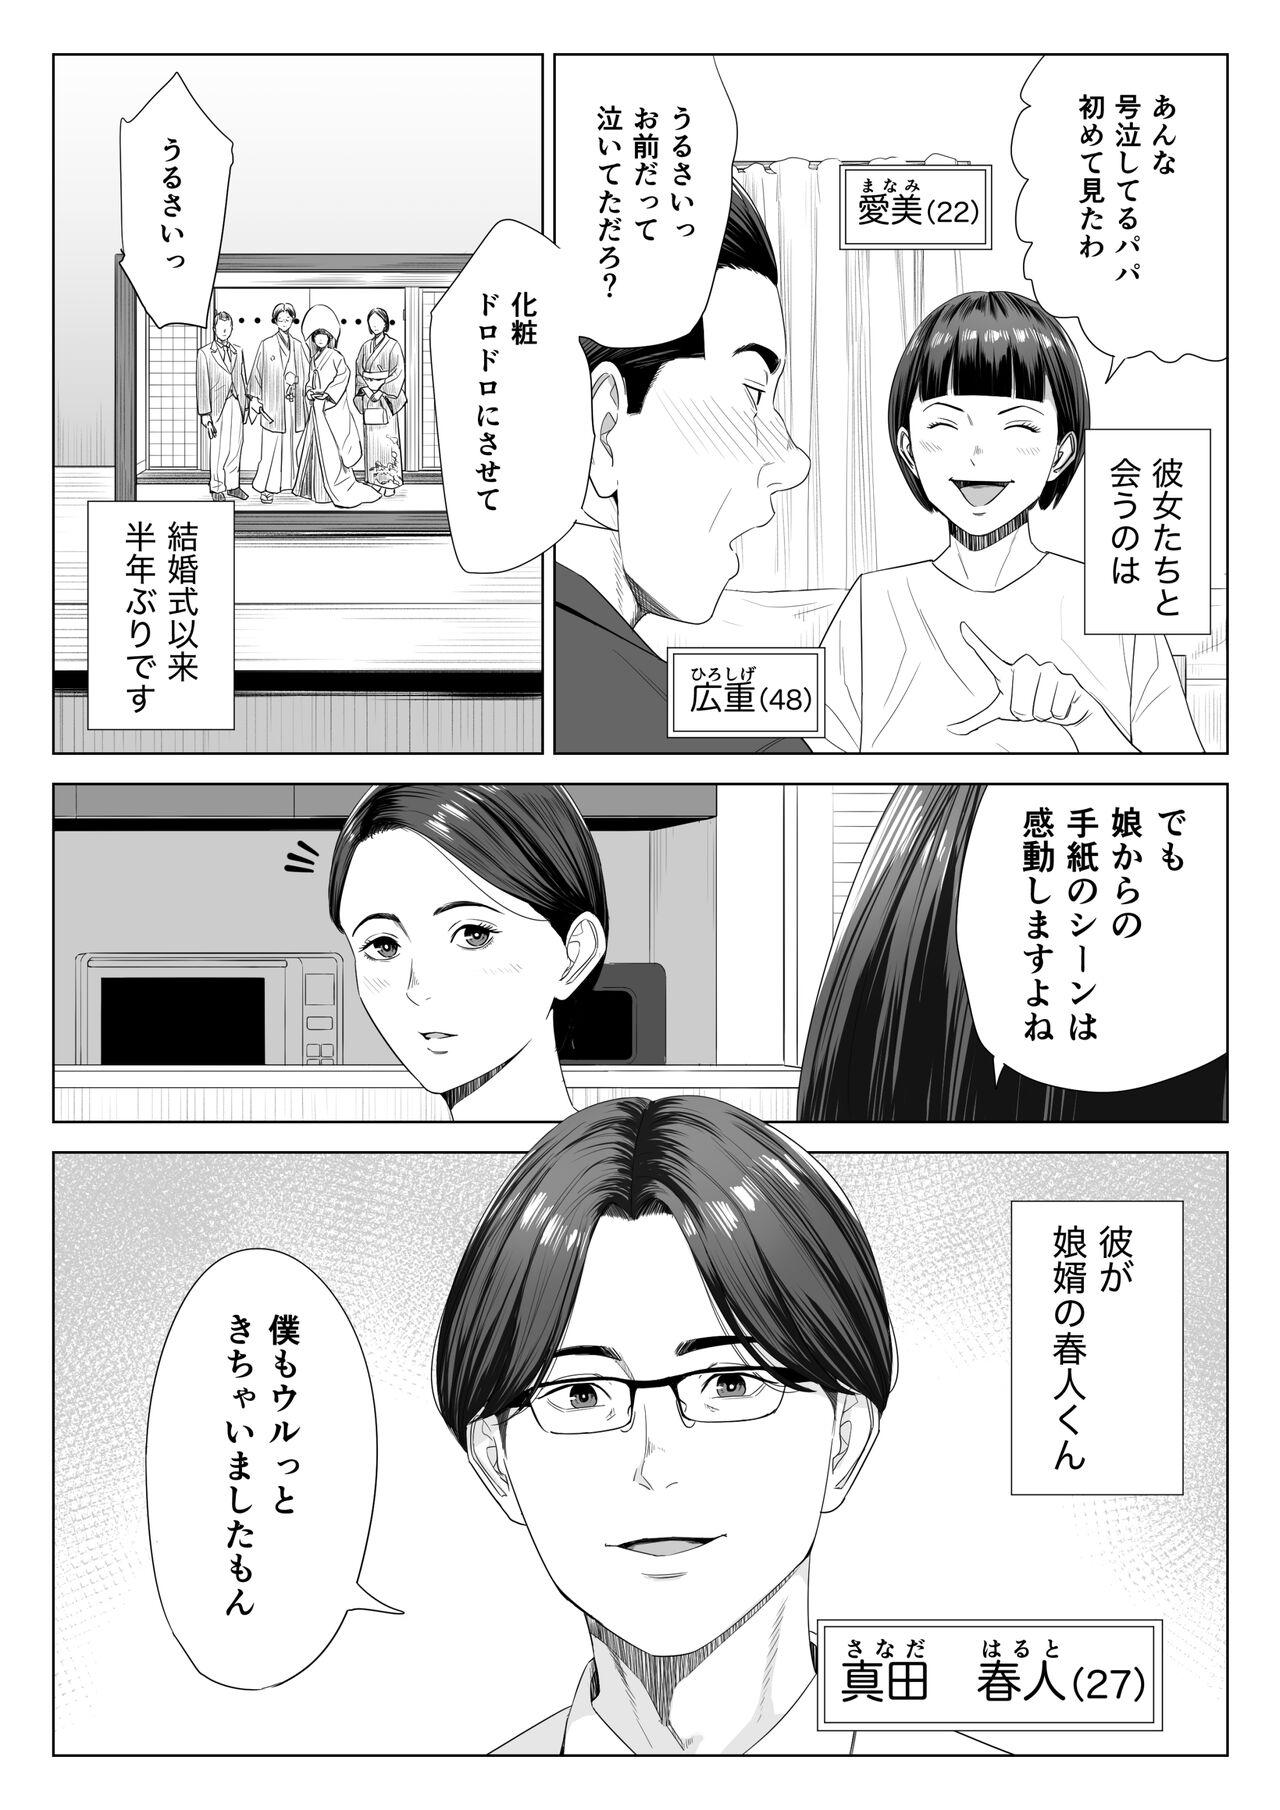 Friend Gibo no tsukaeru karada. - Original Fitness - Page 3